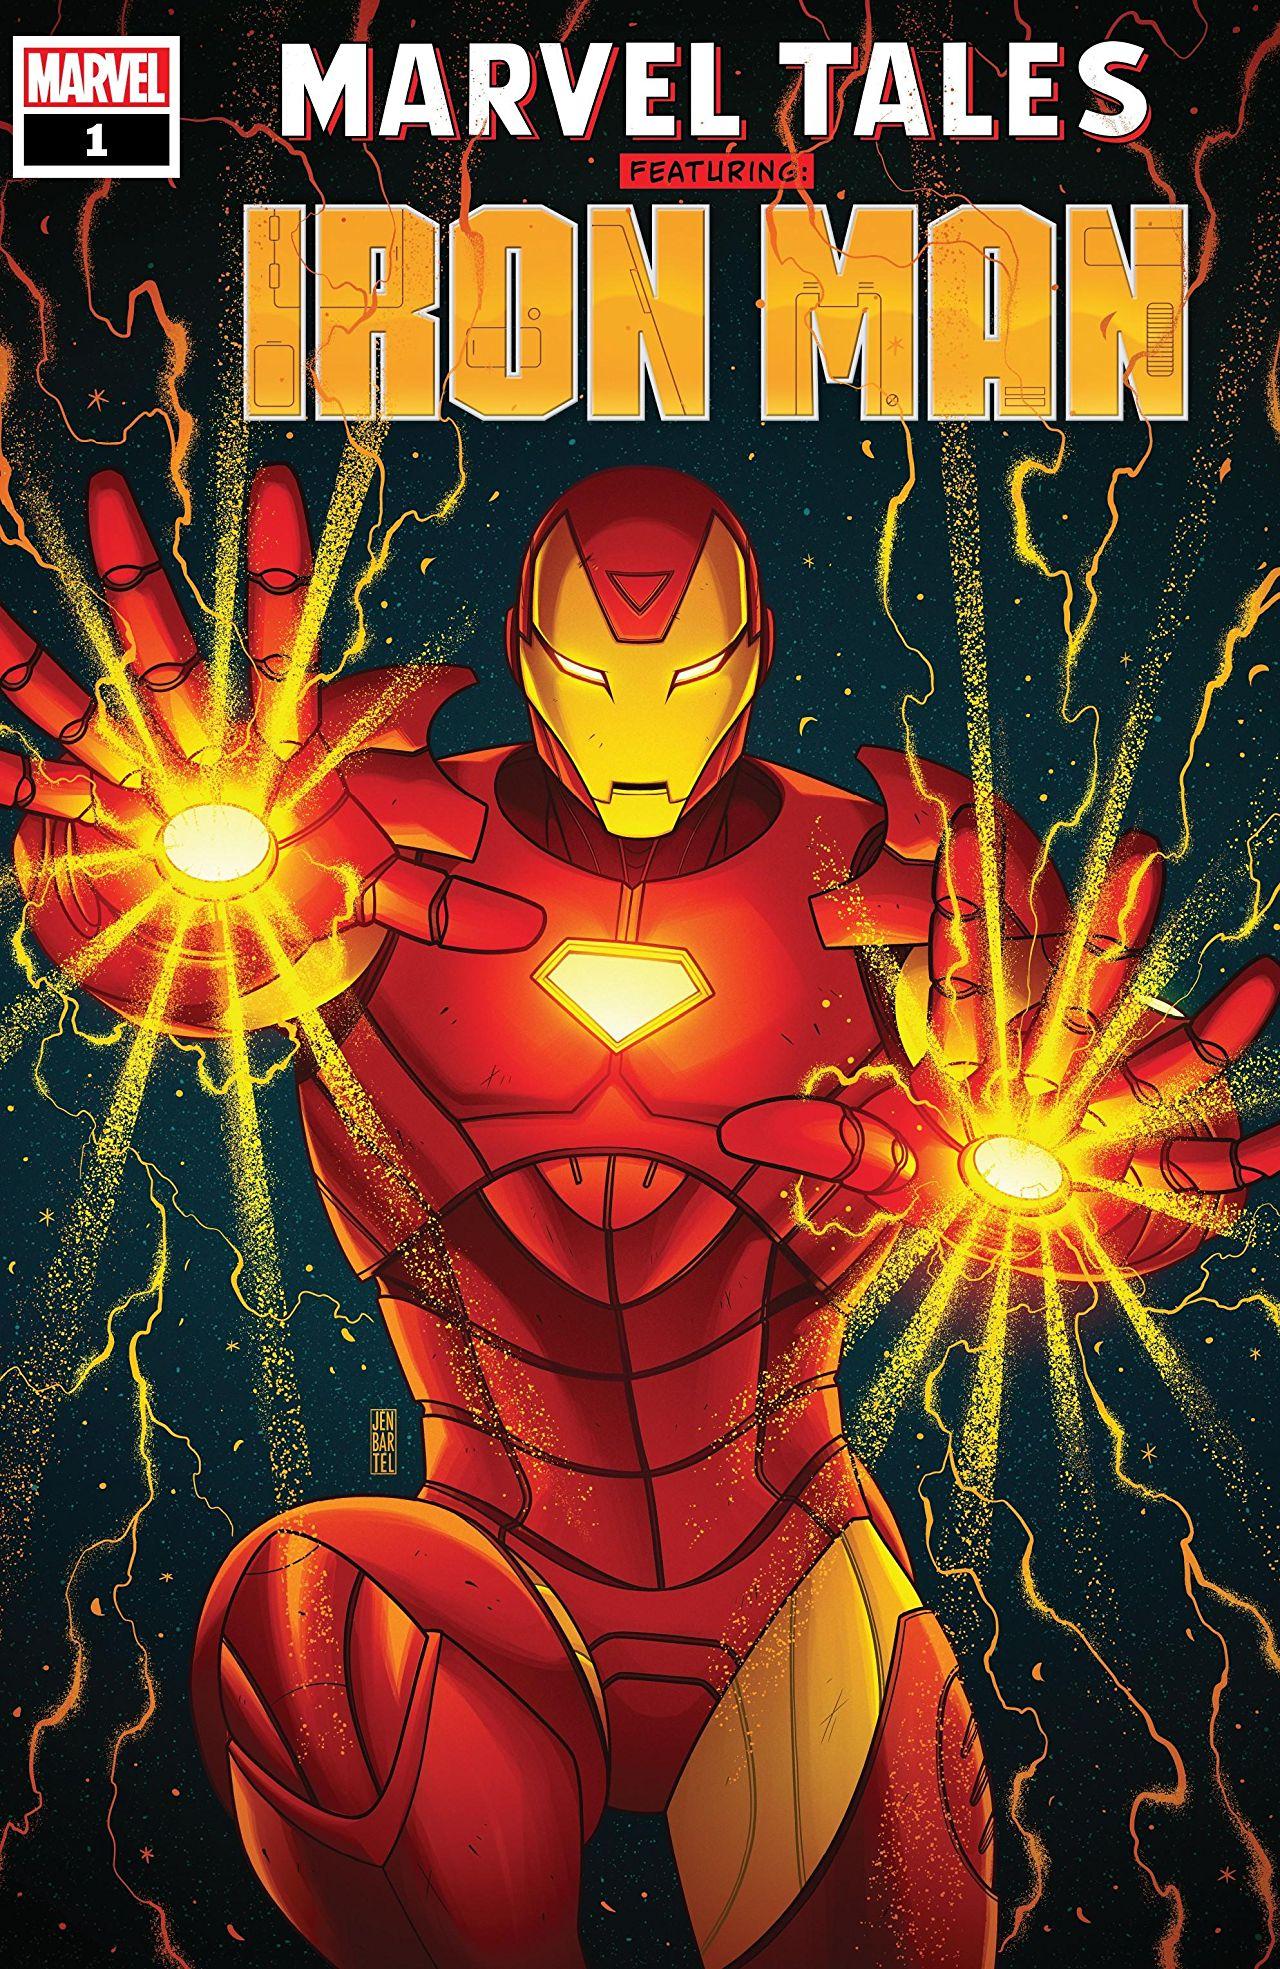 Marvel Tales: Iron Man Vol. 1 #1